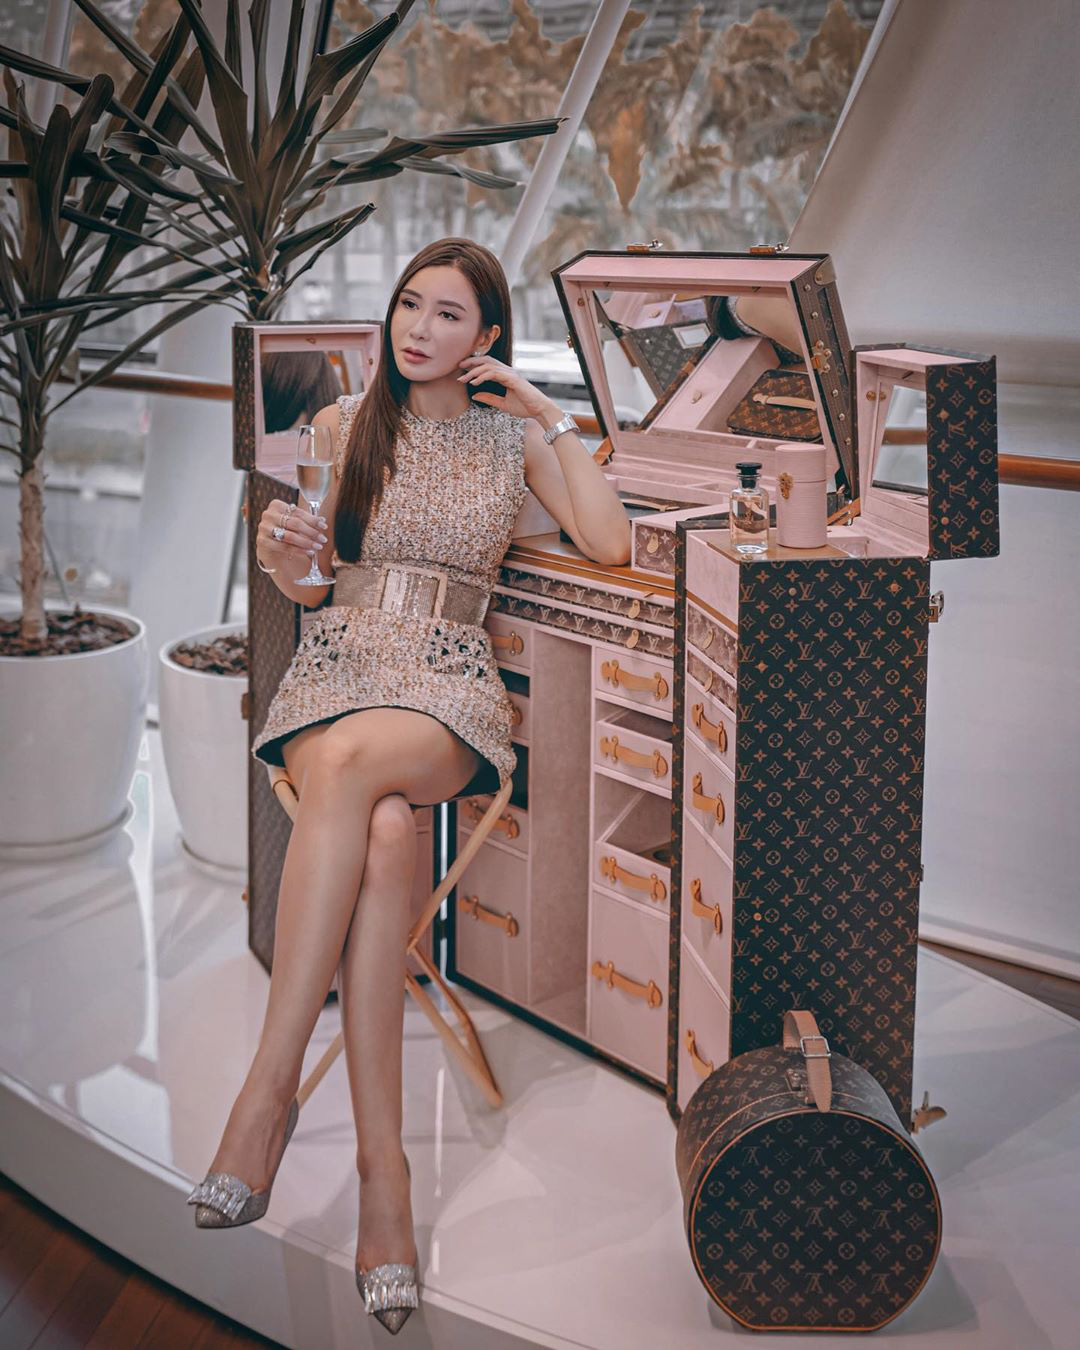 Có 4 tỷ VNĐ người ta sẽ mua nhà còn bà hoàng Hermès Jamie Chua lại chỉ sắm rương trang điểm sương sương - Ảnh 1.